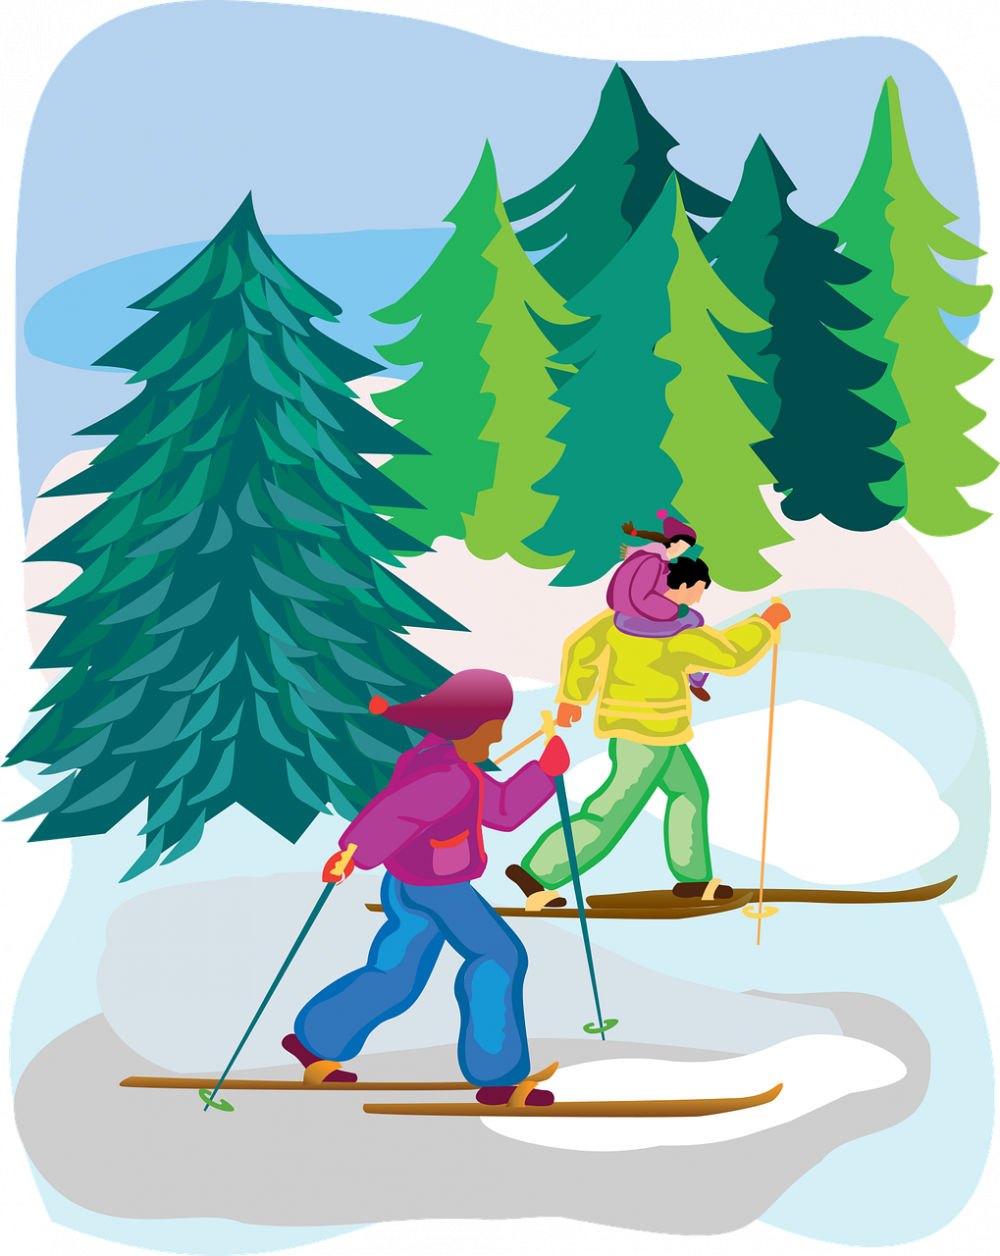 Skidåkning är en populär vintersport som älskas av människor över hela världen